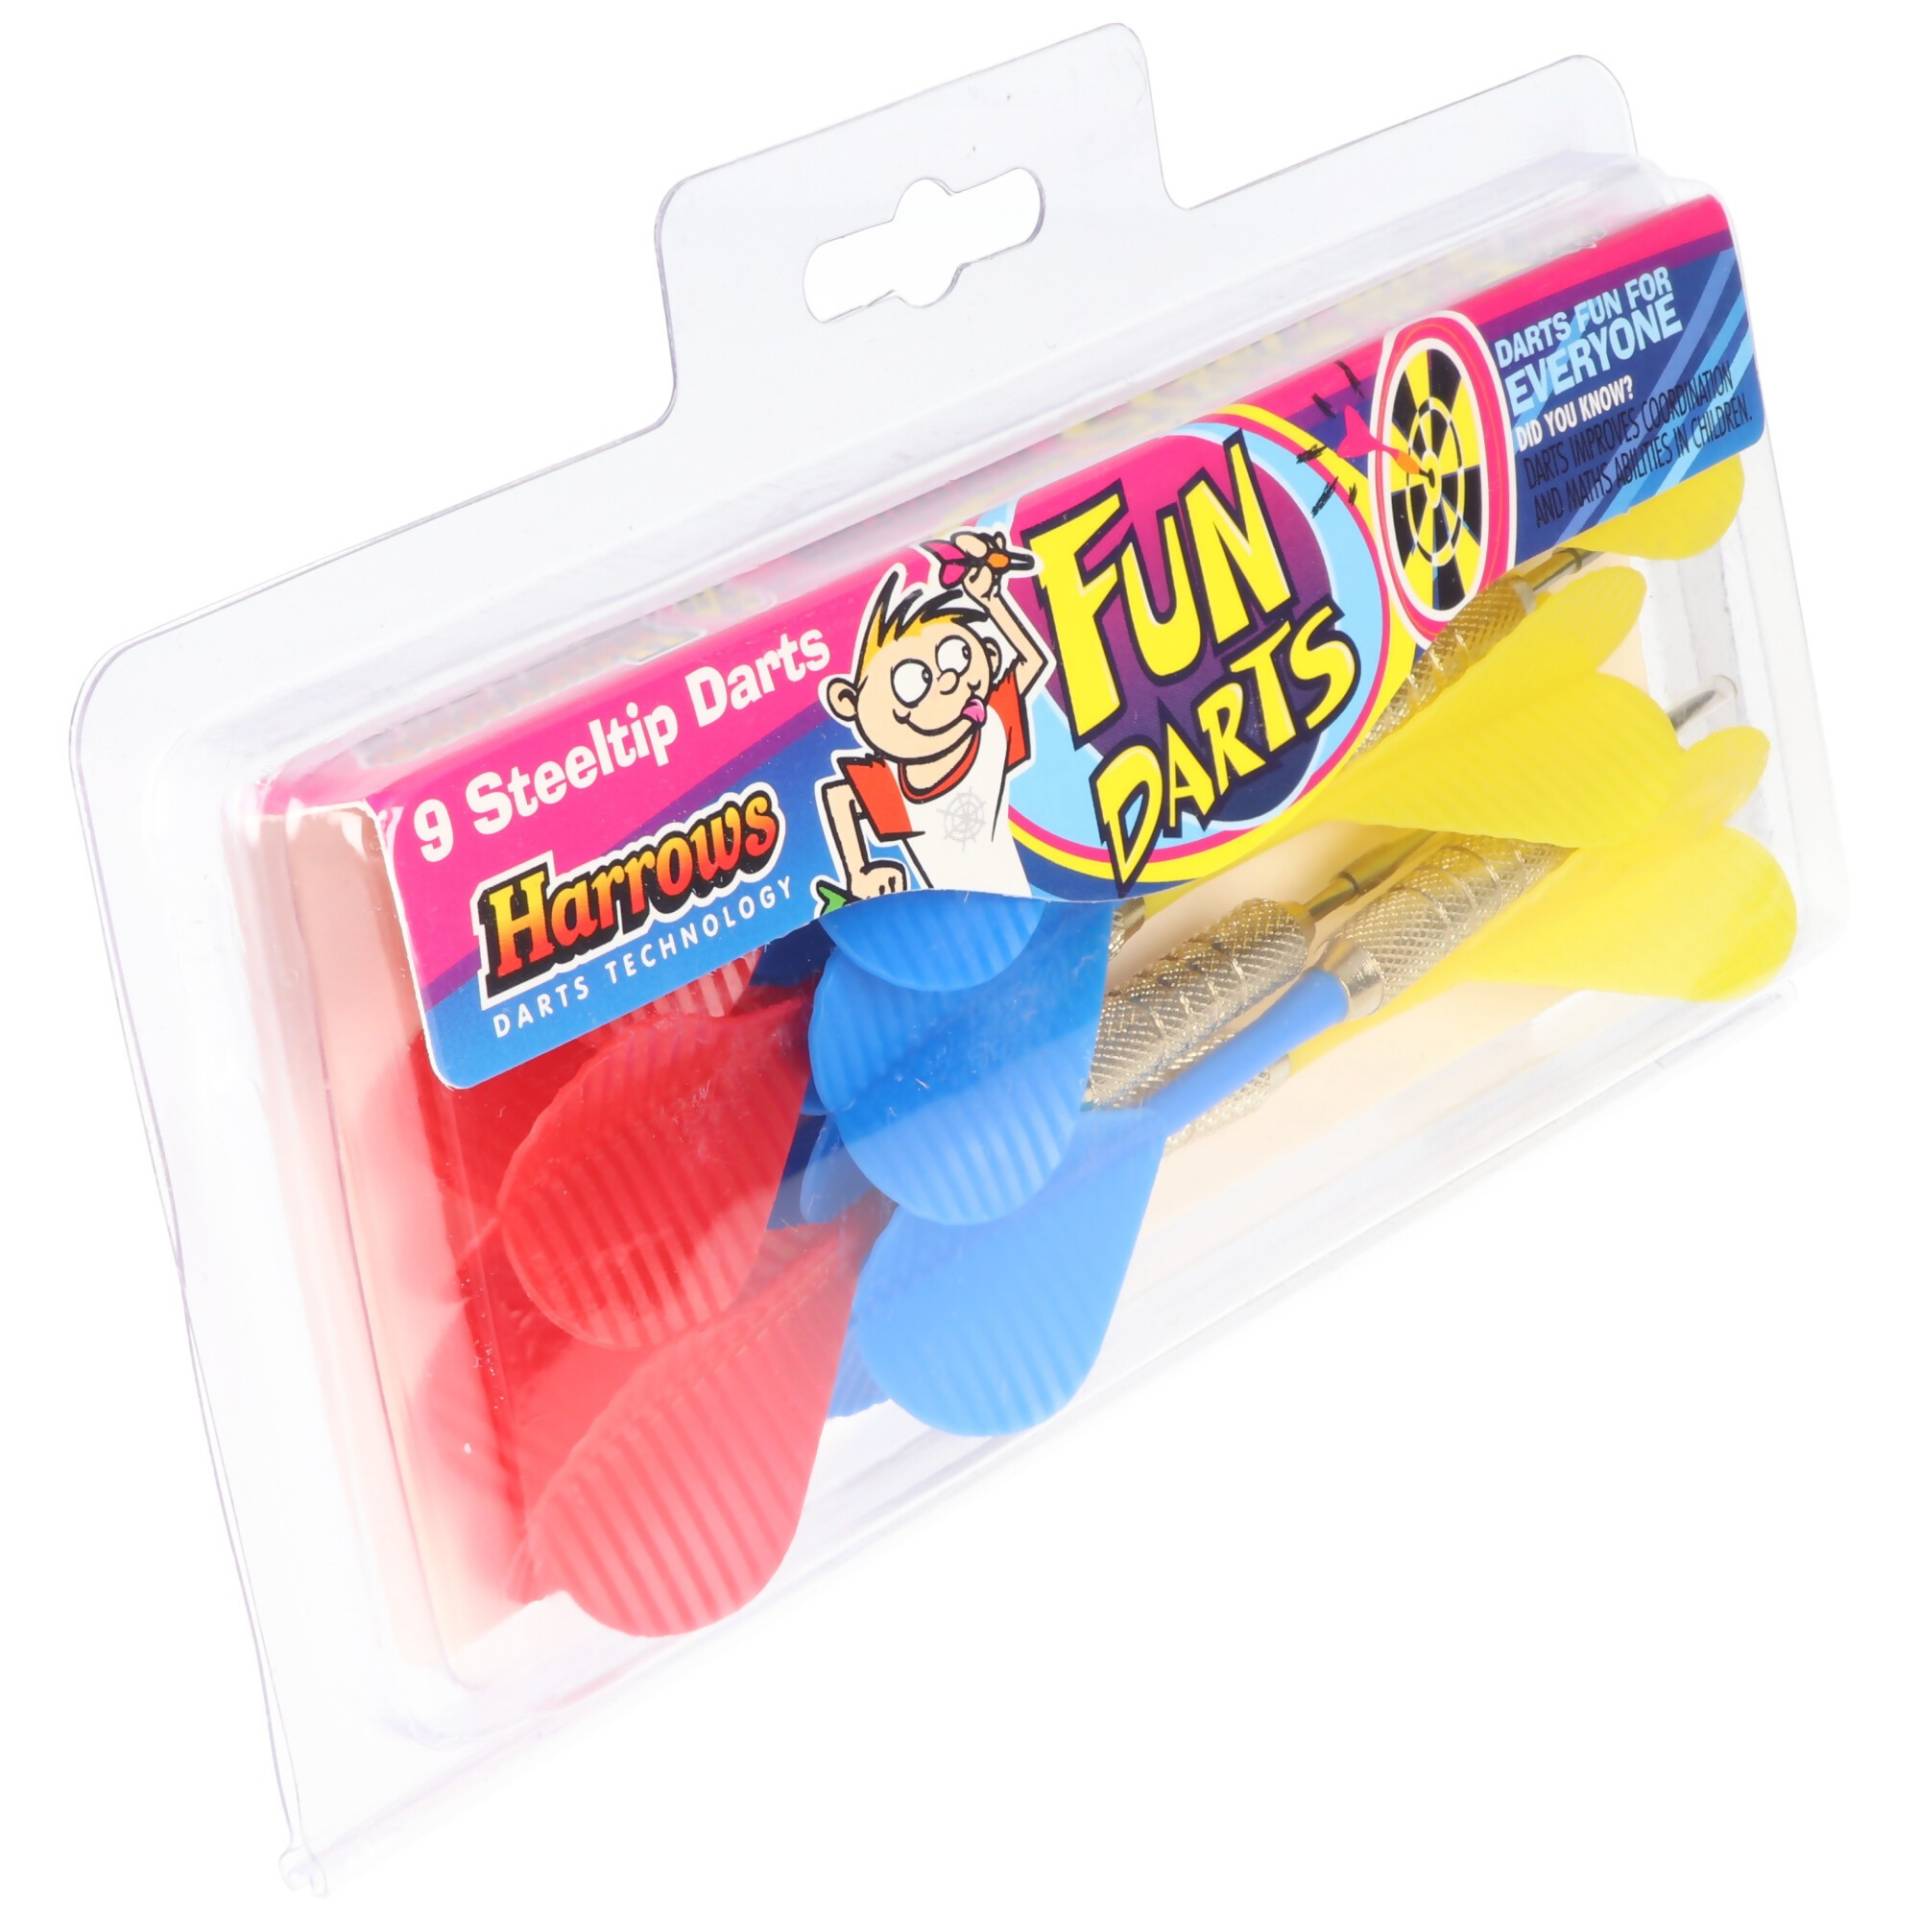 Fun Darts, 9 Steel-Dartpfeile in rot gelb blau von Harrows